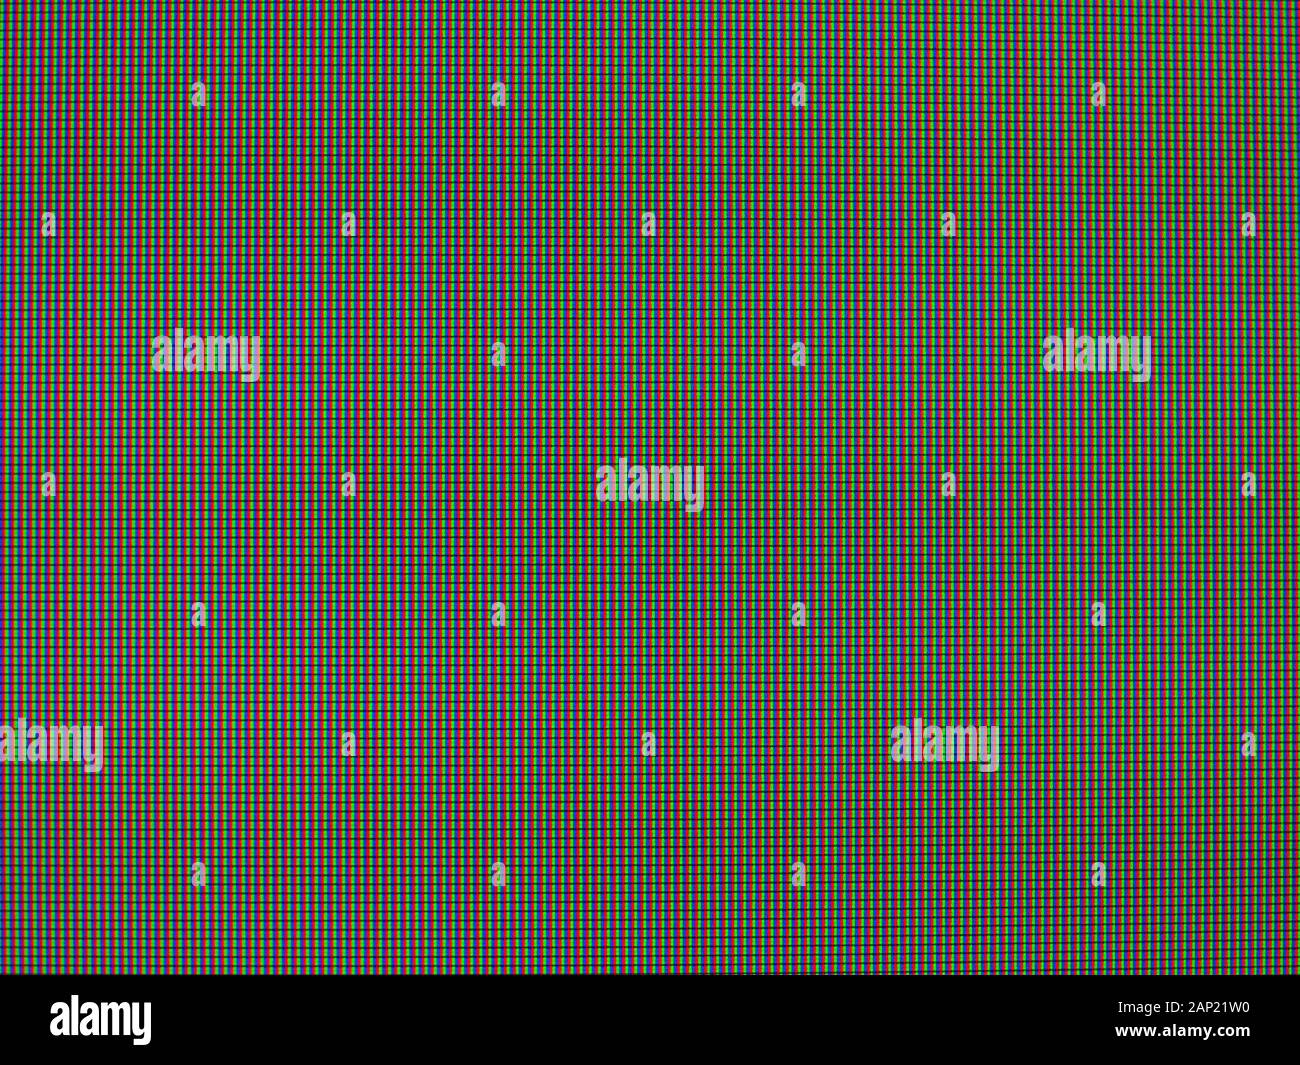 Schermo LCD dettaglio macro con visibili i pixel RGB Foto Stock